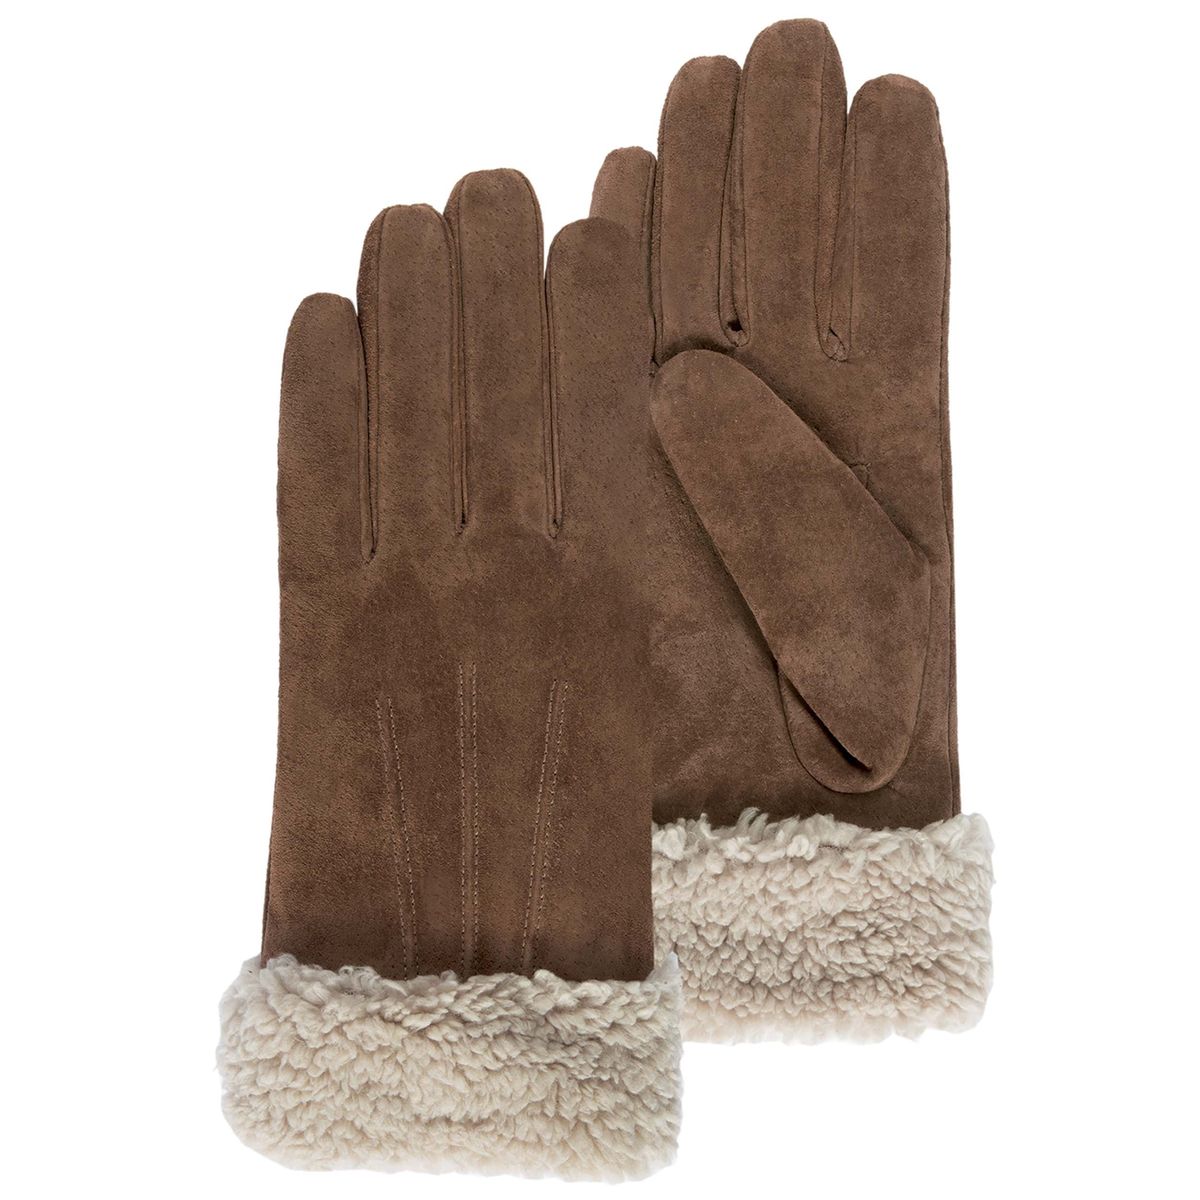 Sous gant en soie 100 % pour petites et grandes mains, spécial Hiver.